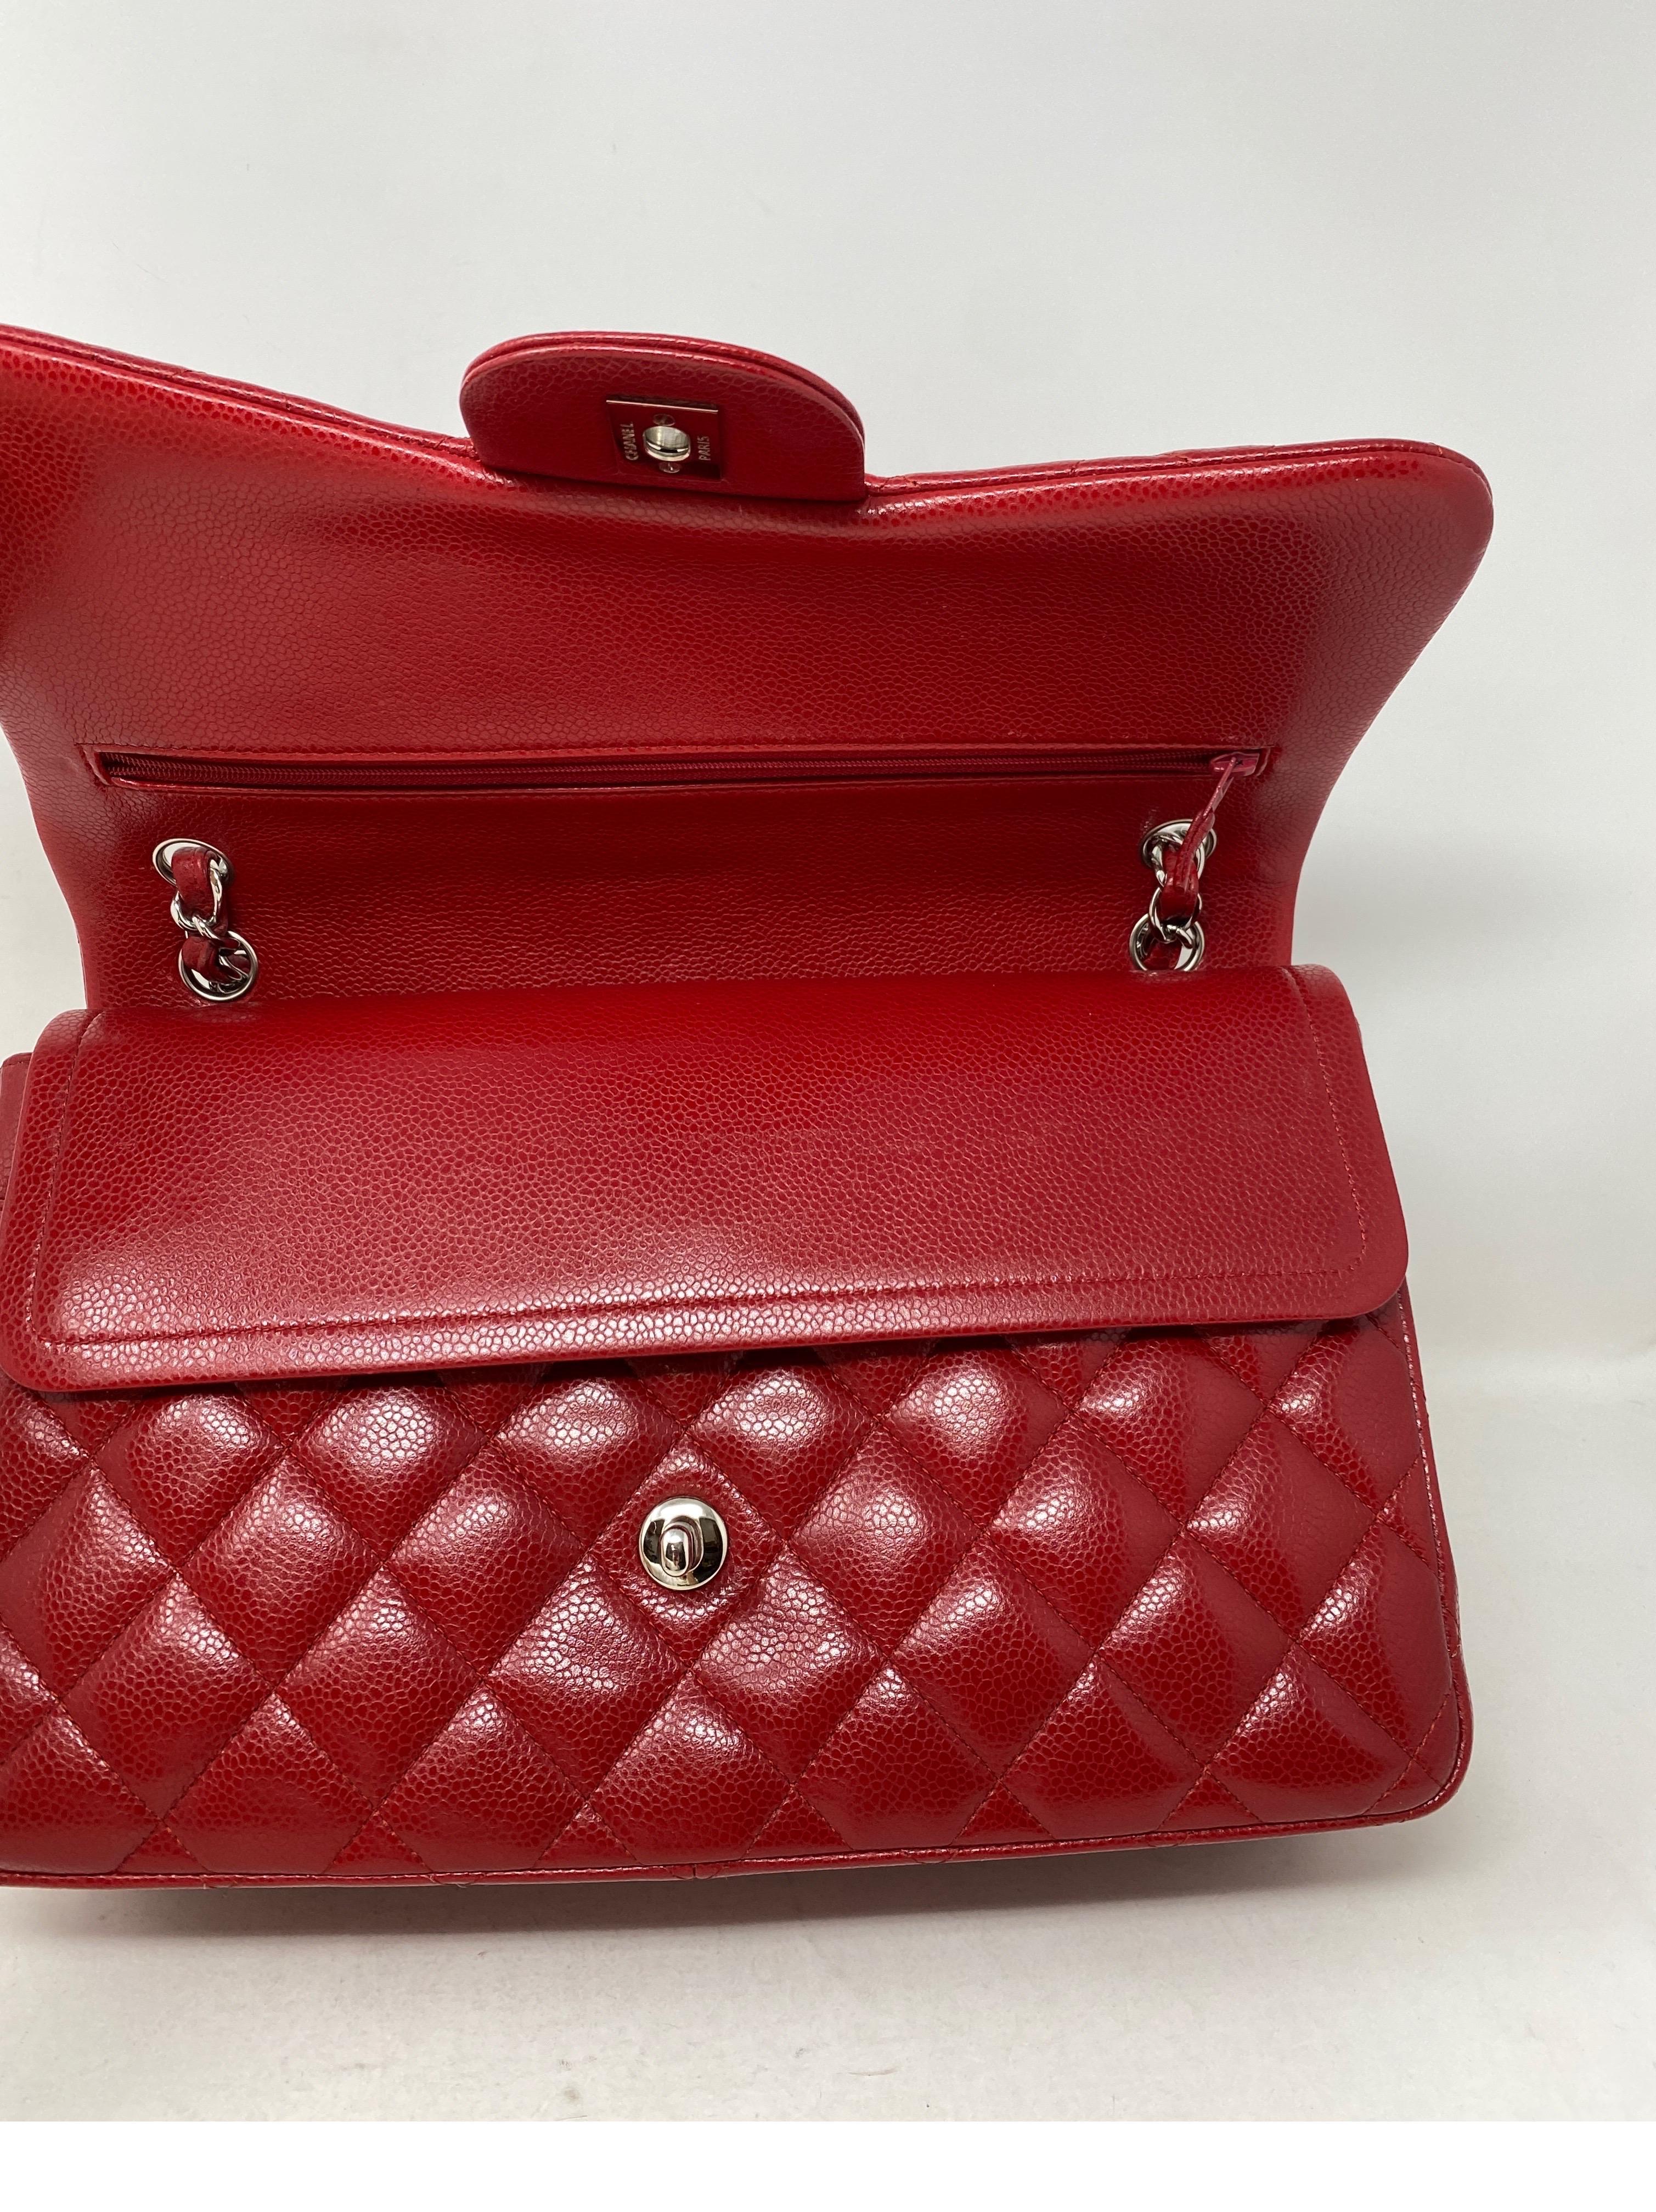 Chanel Red Jumbo Double Flap Bag  5